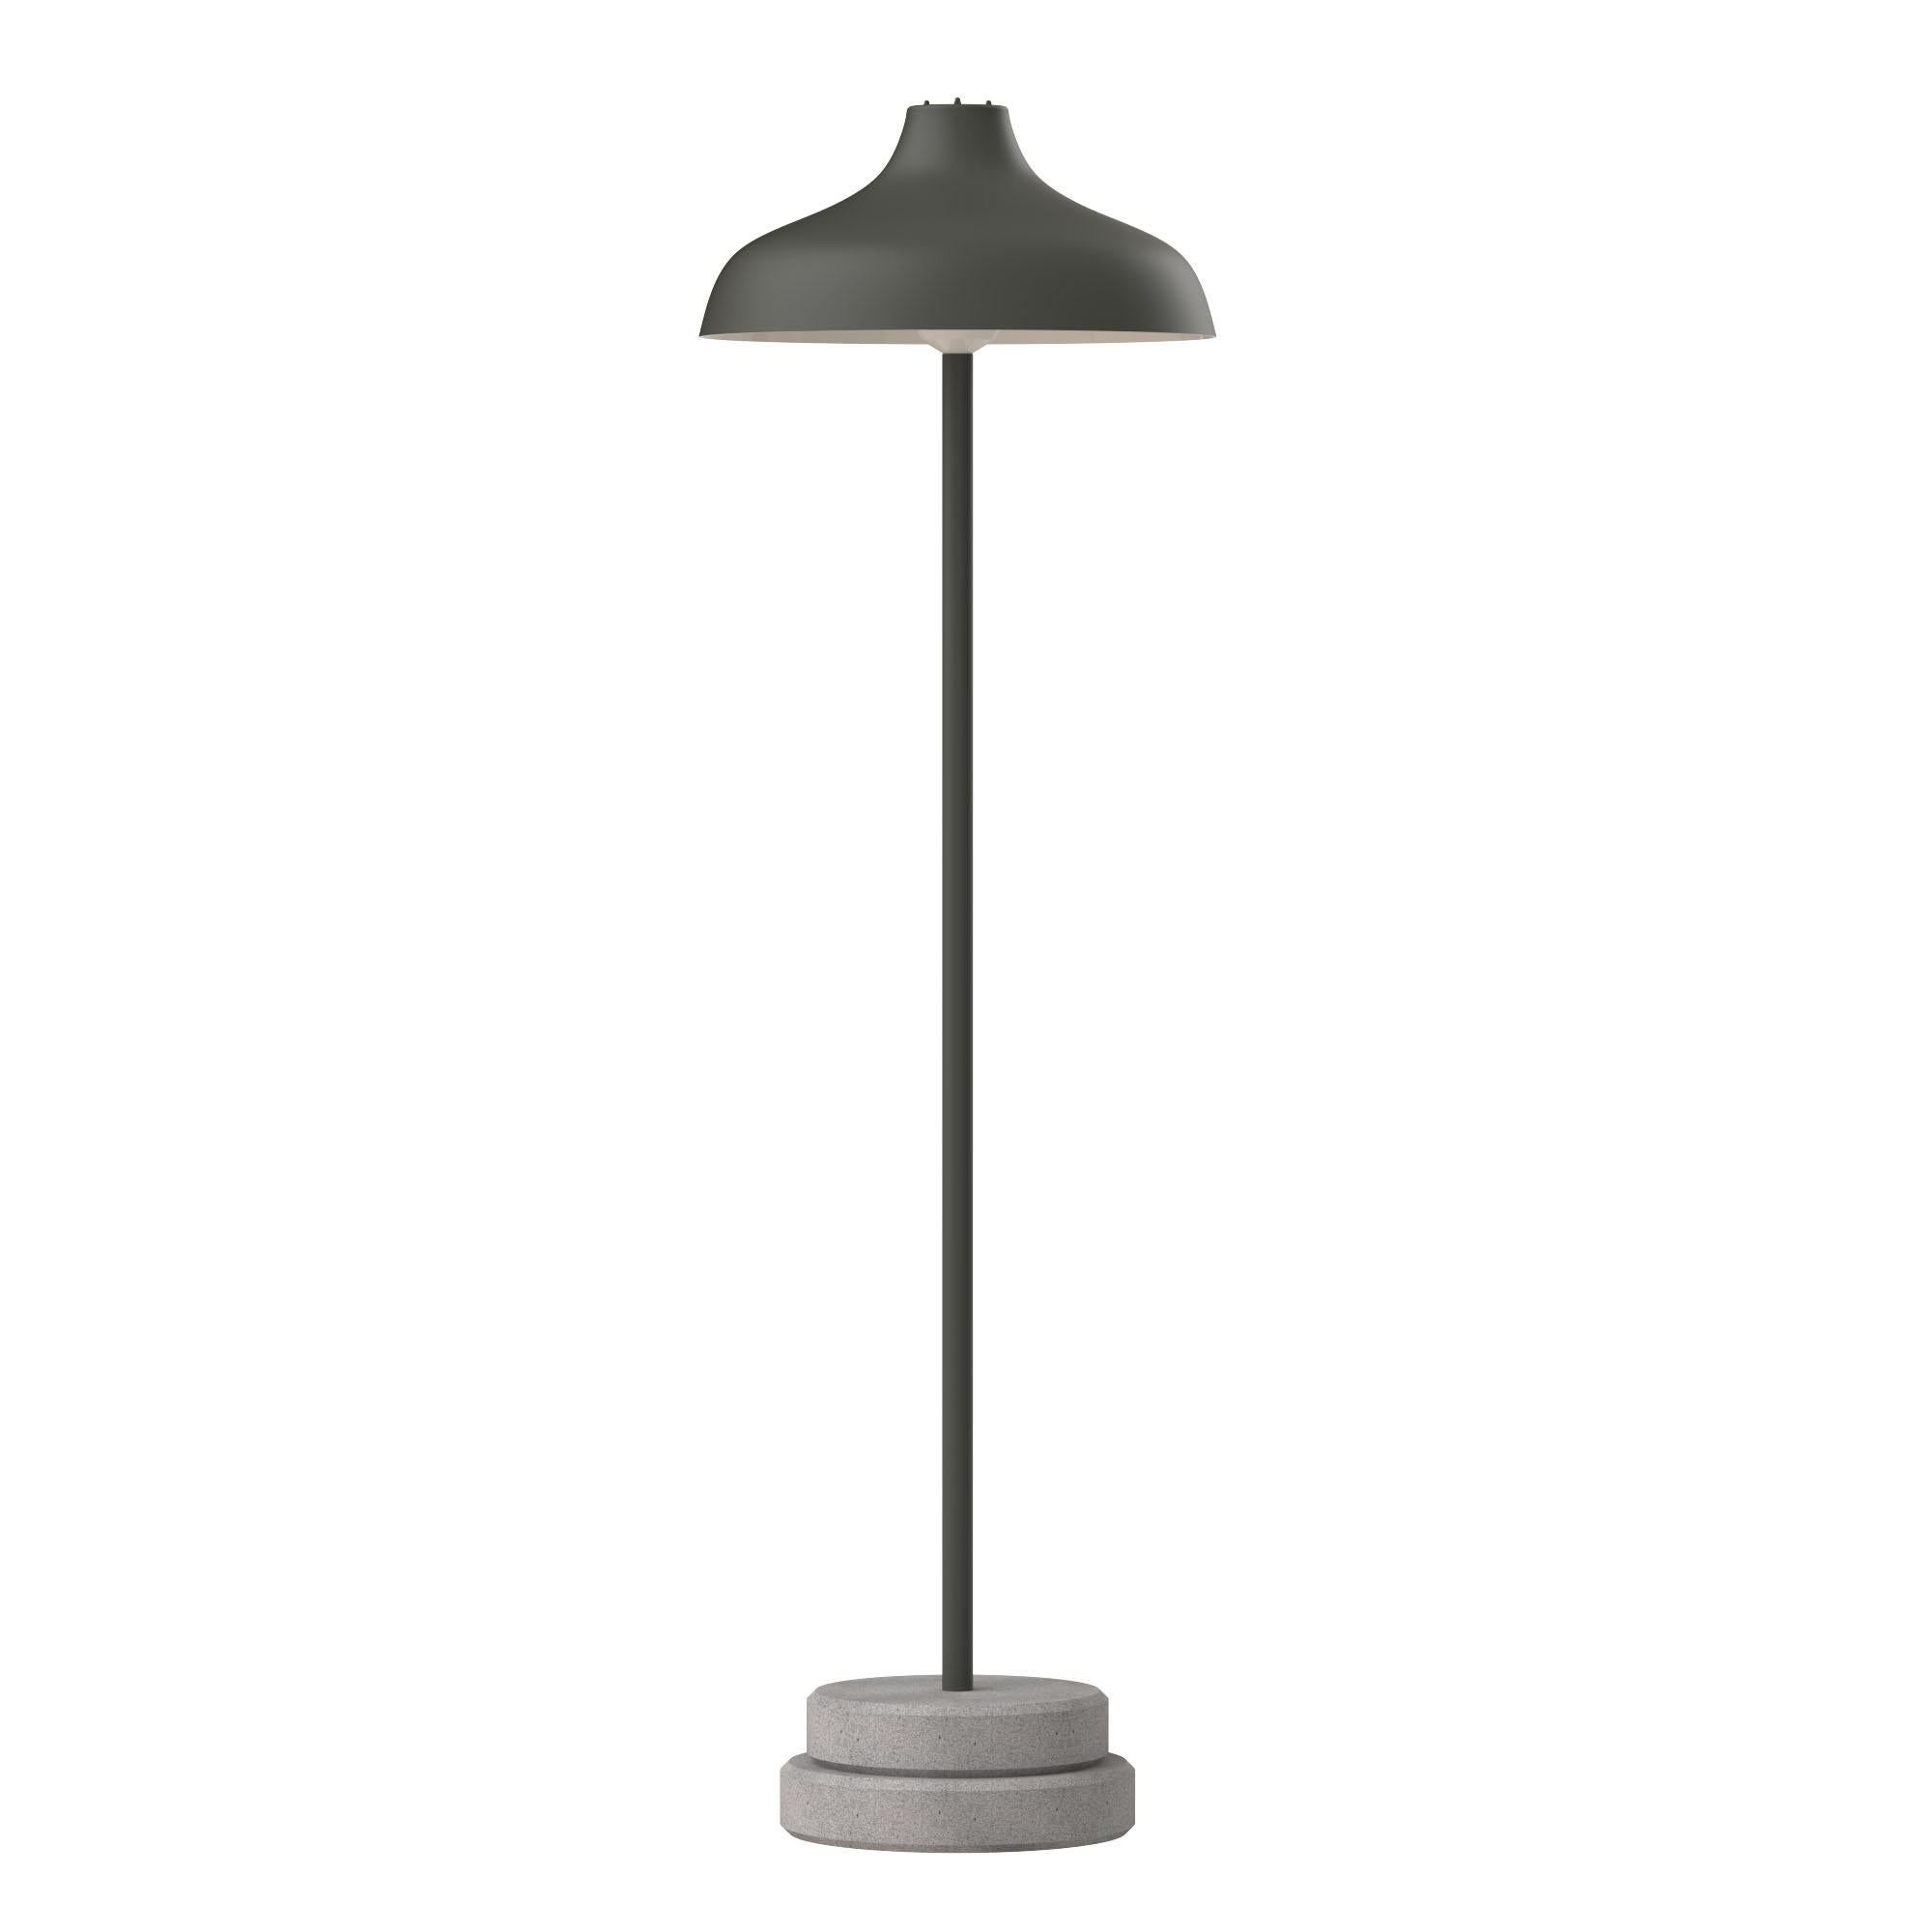 Contemporary Ignazio Gardella 'Pagoda Piantana' Floor Lamp for Tato Italia in Stone Gray For Sale